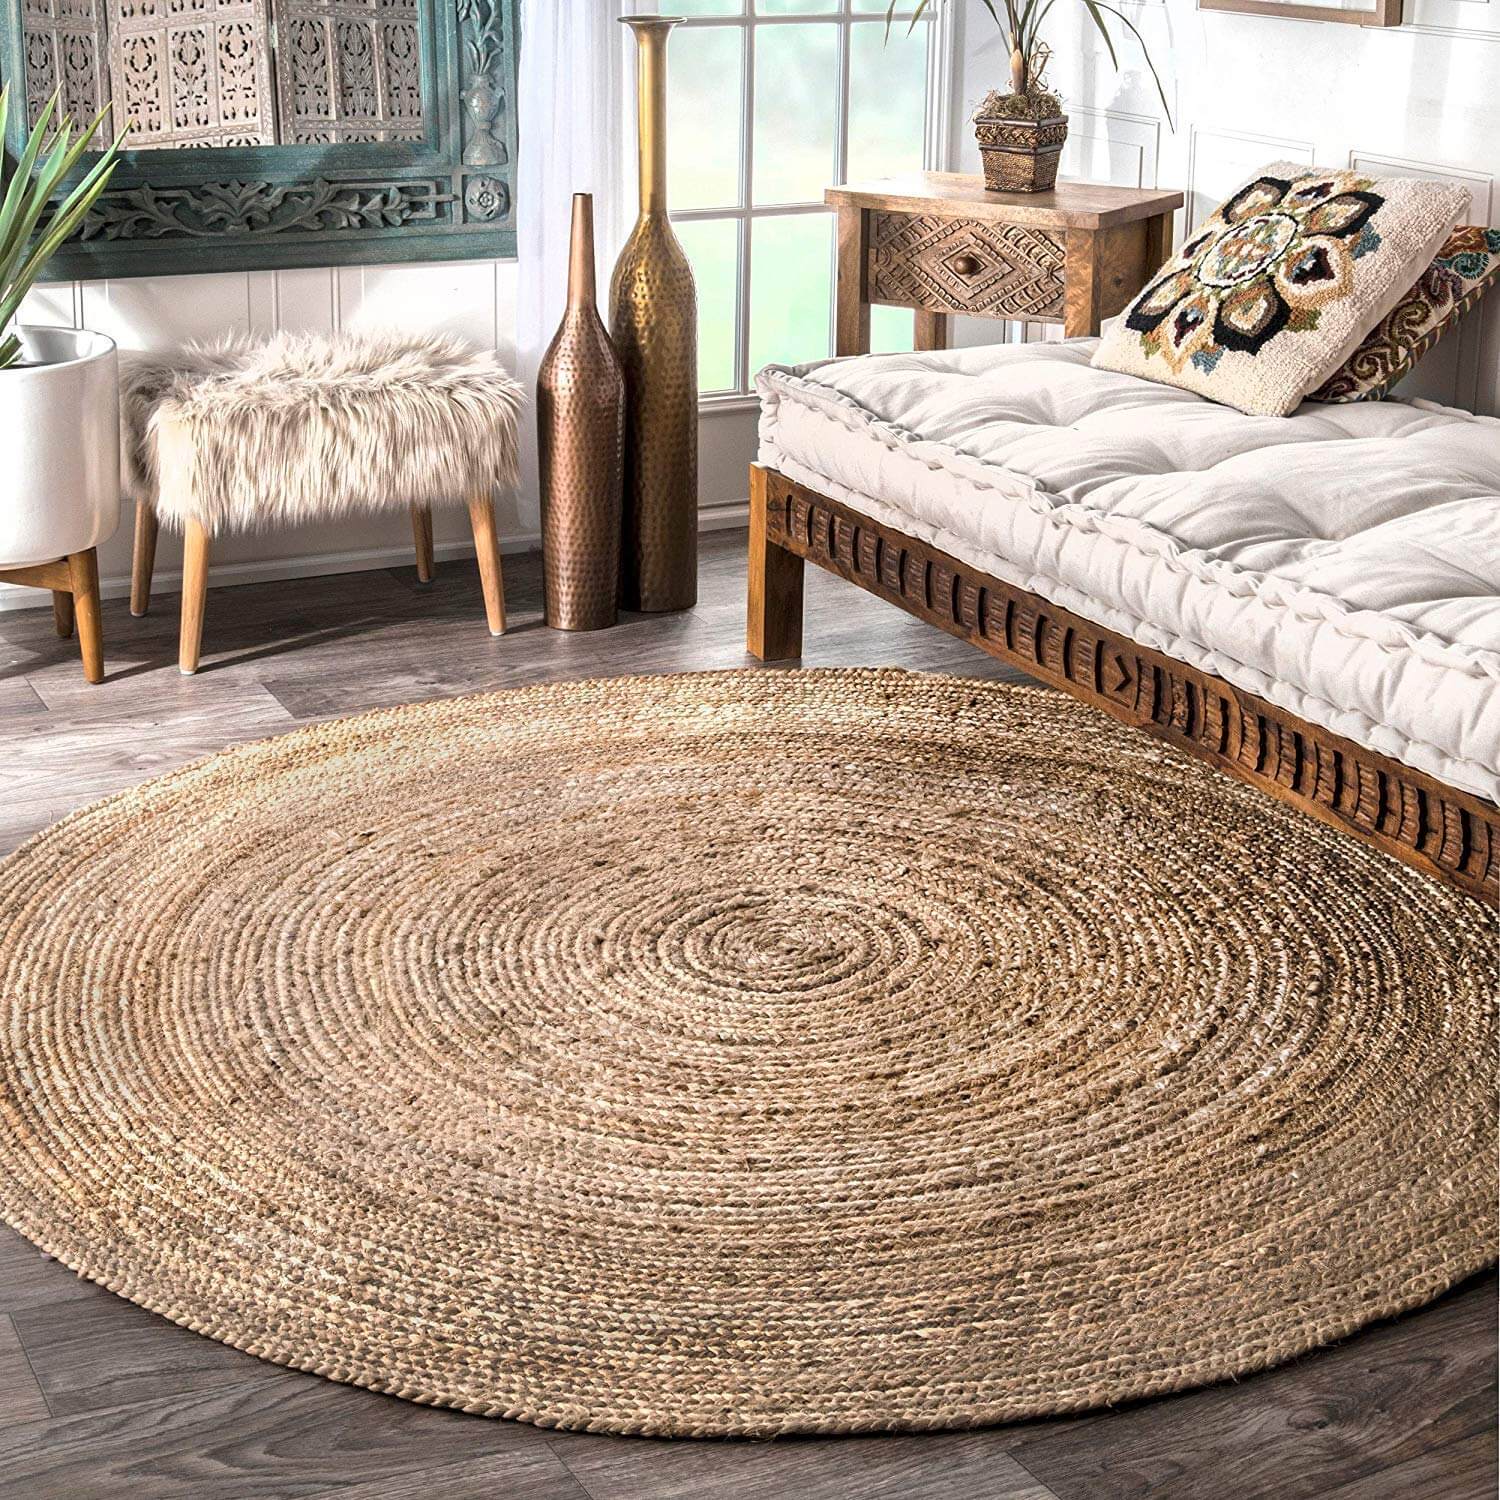 Round jute rugs (1)